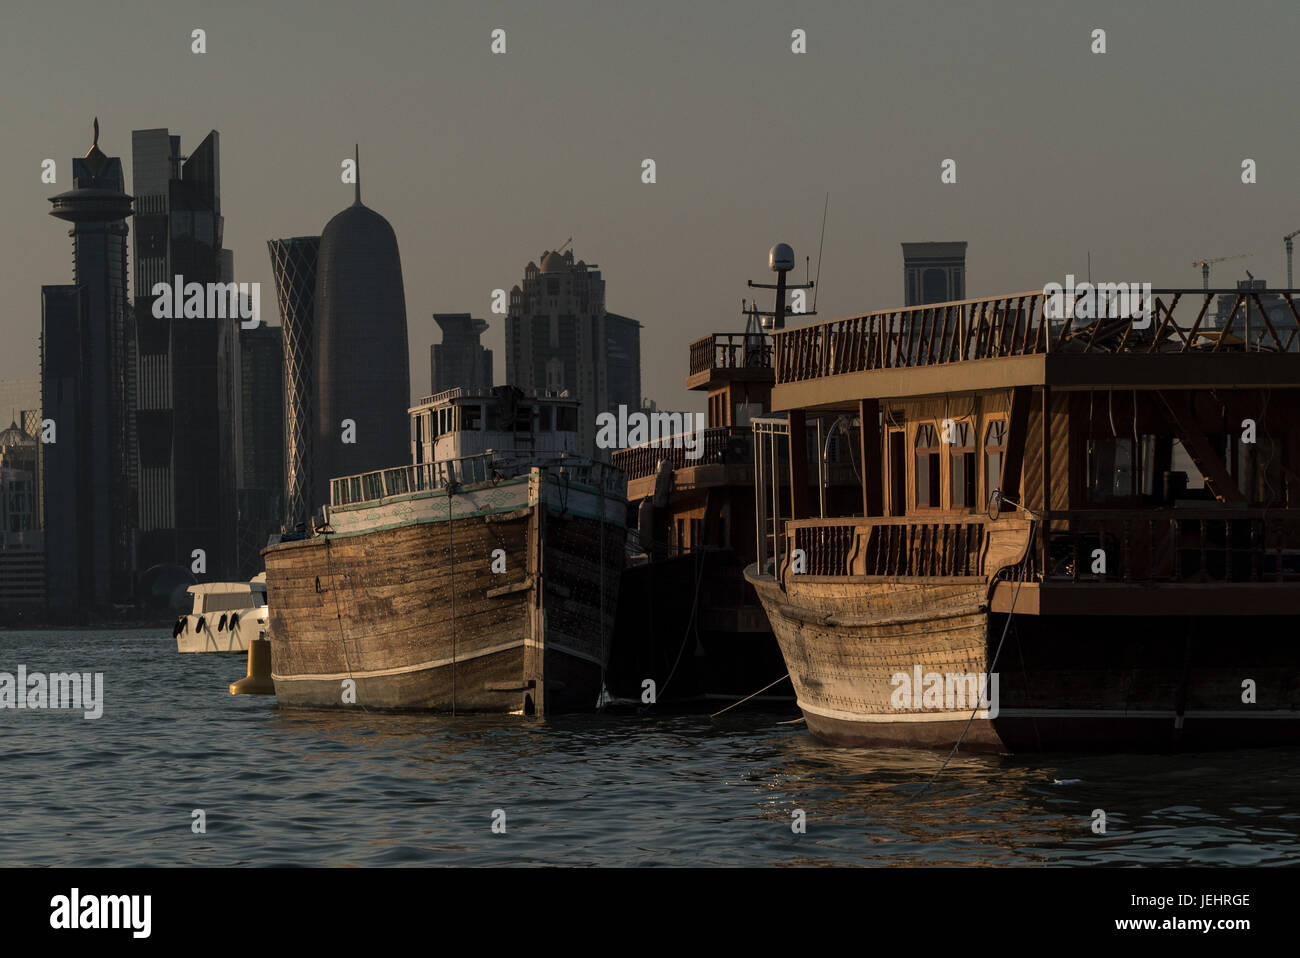 Traditionelle Boote vor Anker gegangen von Doha Corniche. Saudi-Arabien und anderen arabischen Ländern, die Riegel zu Katar geschnitten haben. Stockfoto